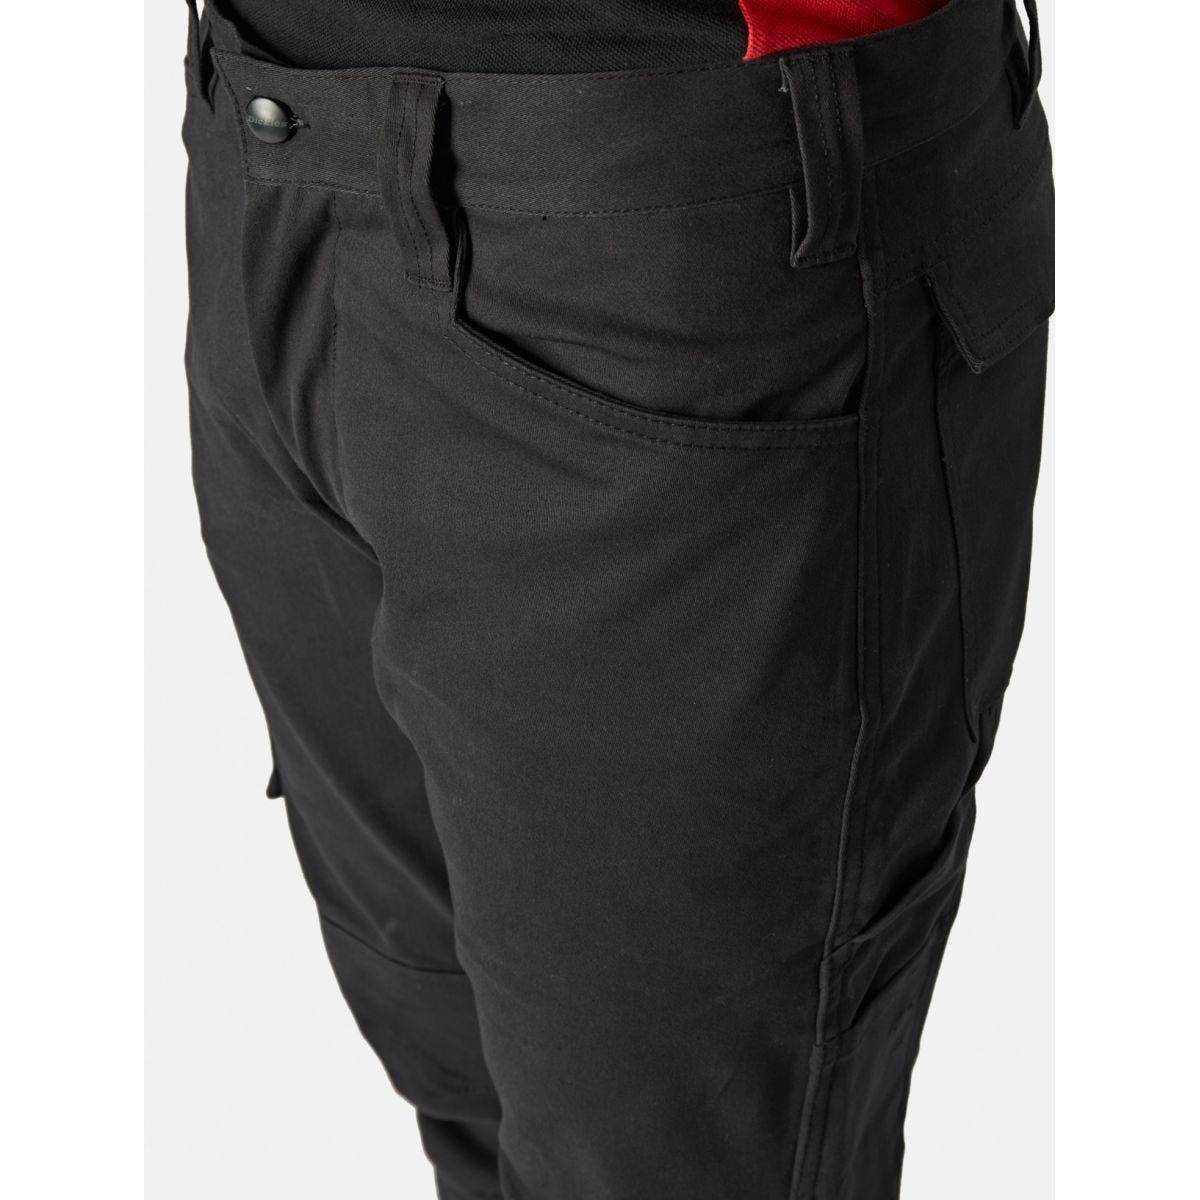 Pantalon Lead In Flex Noir - Dickies - Taille 50 3